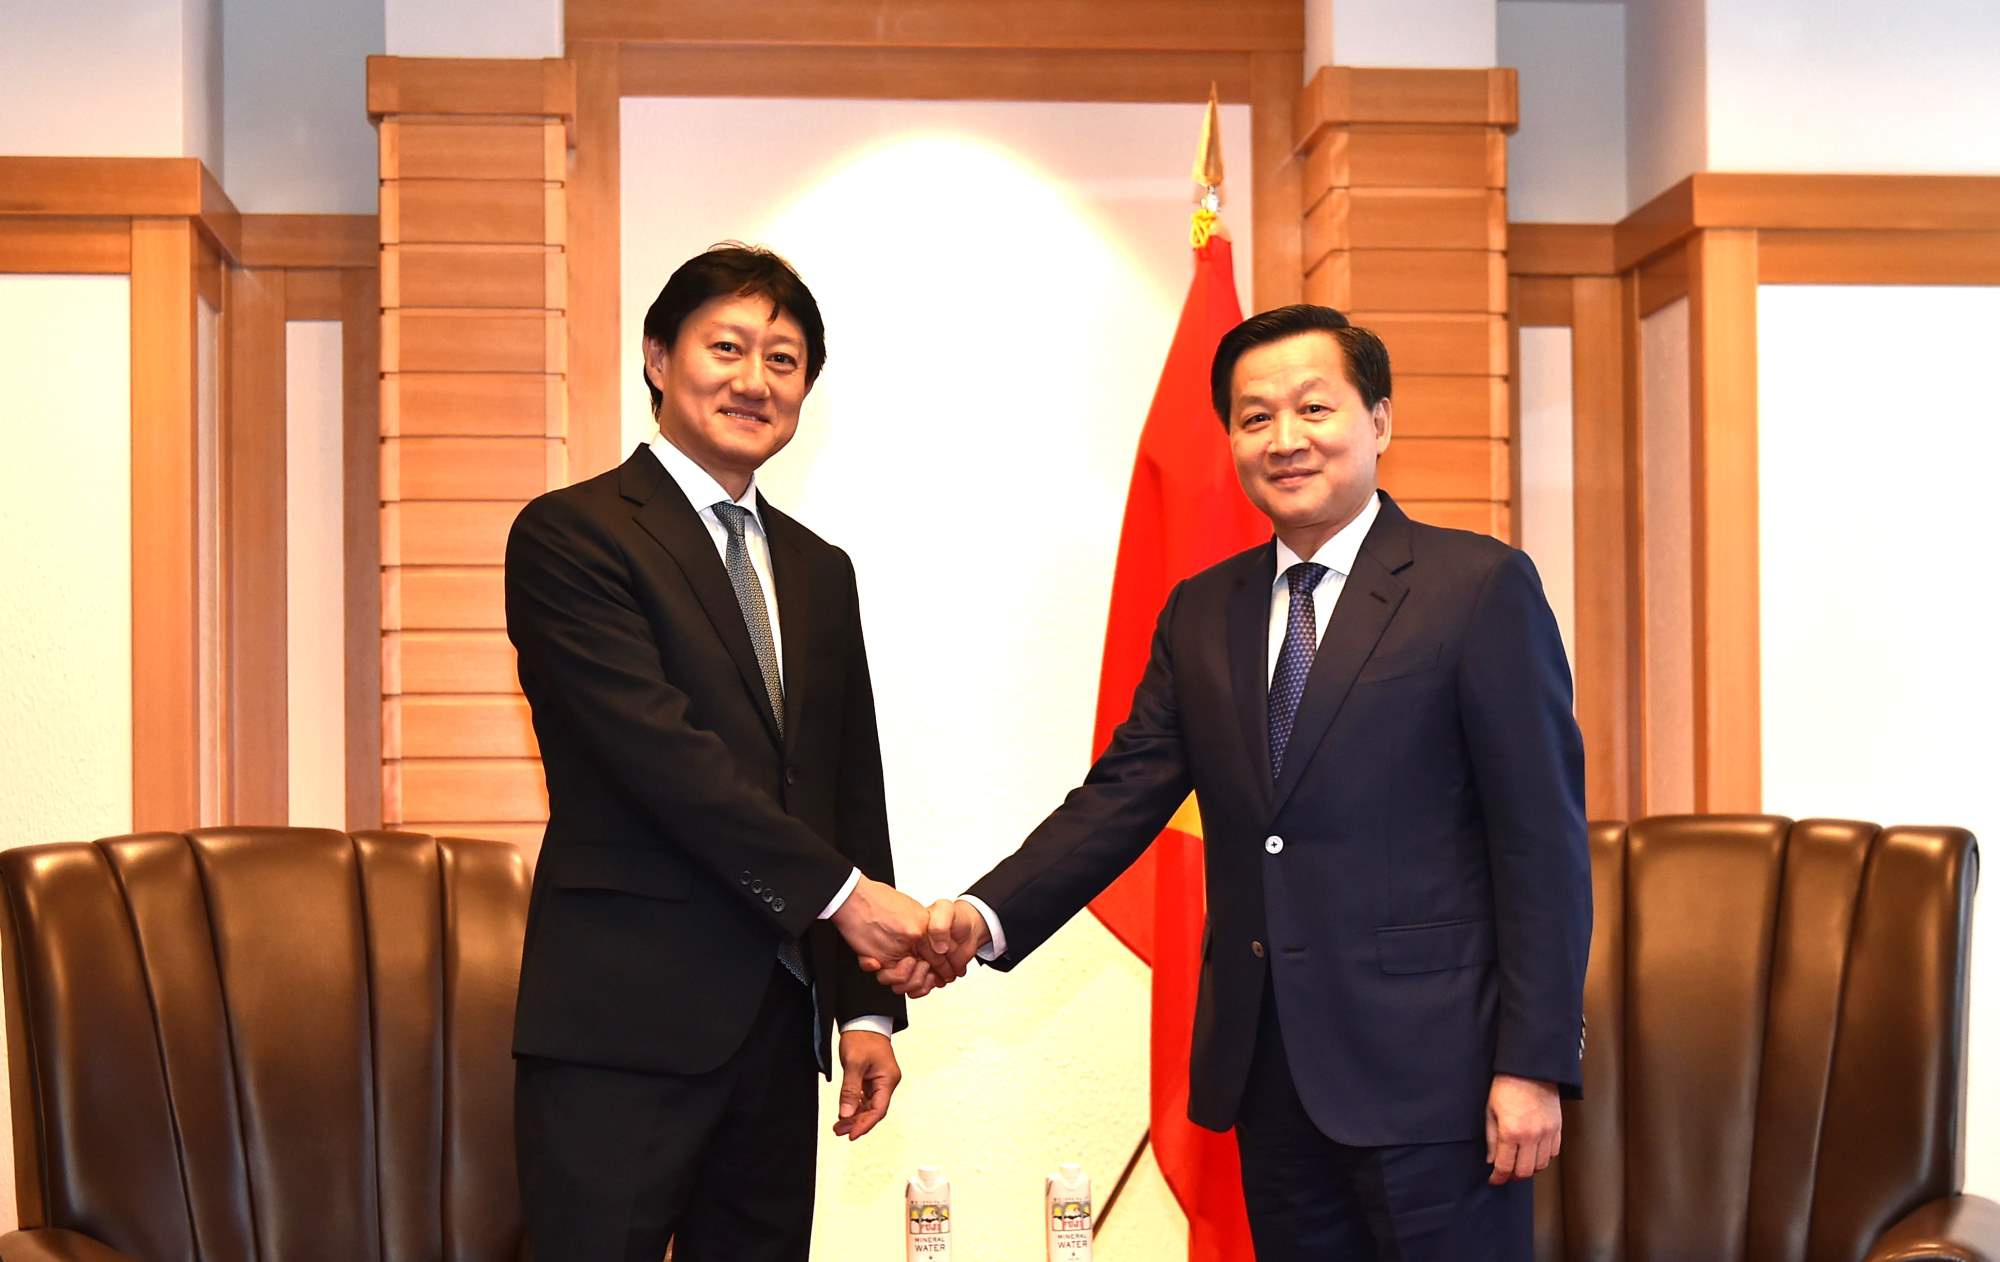 Phó Thủ tướng Chính phủ đề nghị MOECO mở rộng các hoạt động đầu tư kinh doanh tại Việt Nam cho tương xứng với tiềm lực tài chính, trình độ công nghệ của MOECO. Ảnh: Bộ Ngoại giao